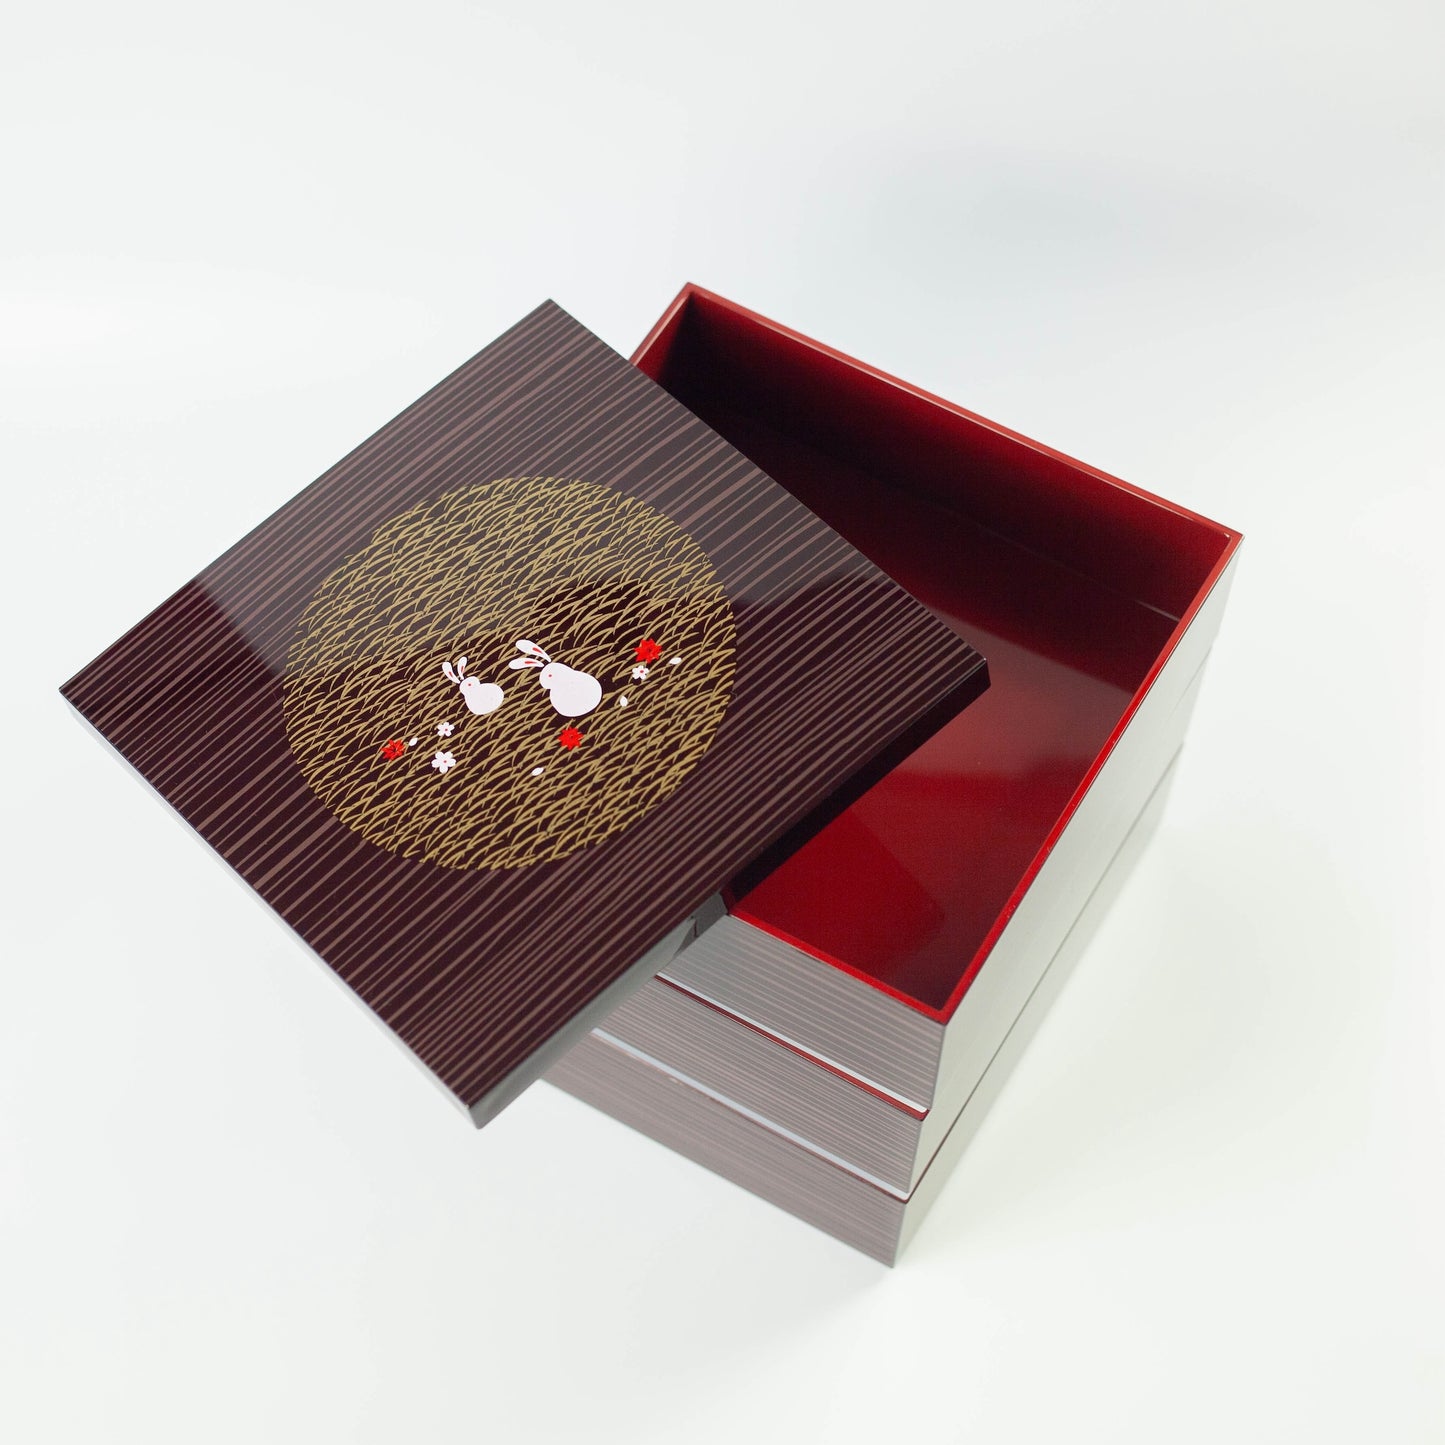 Usagi Mokume Large 3 Tier Picnic Box (18cm)